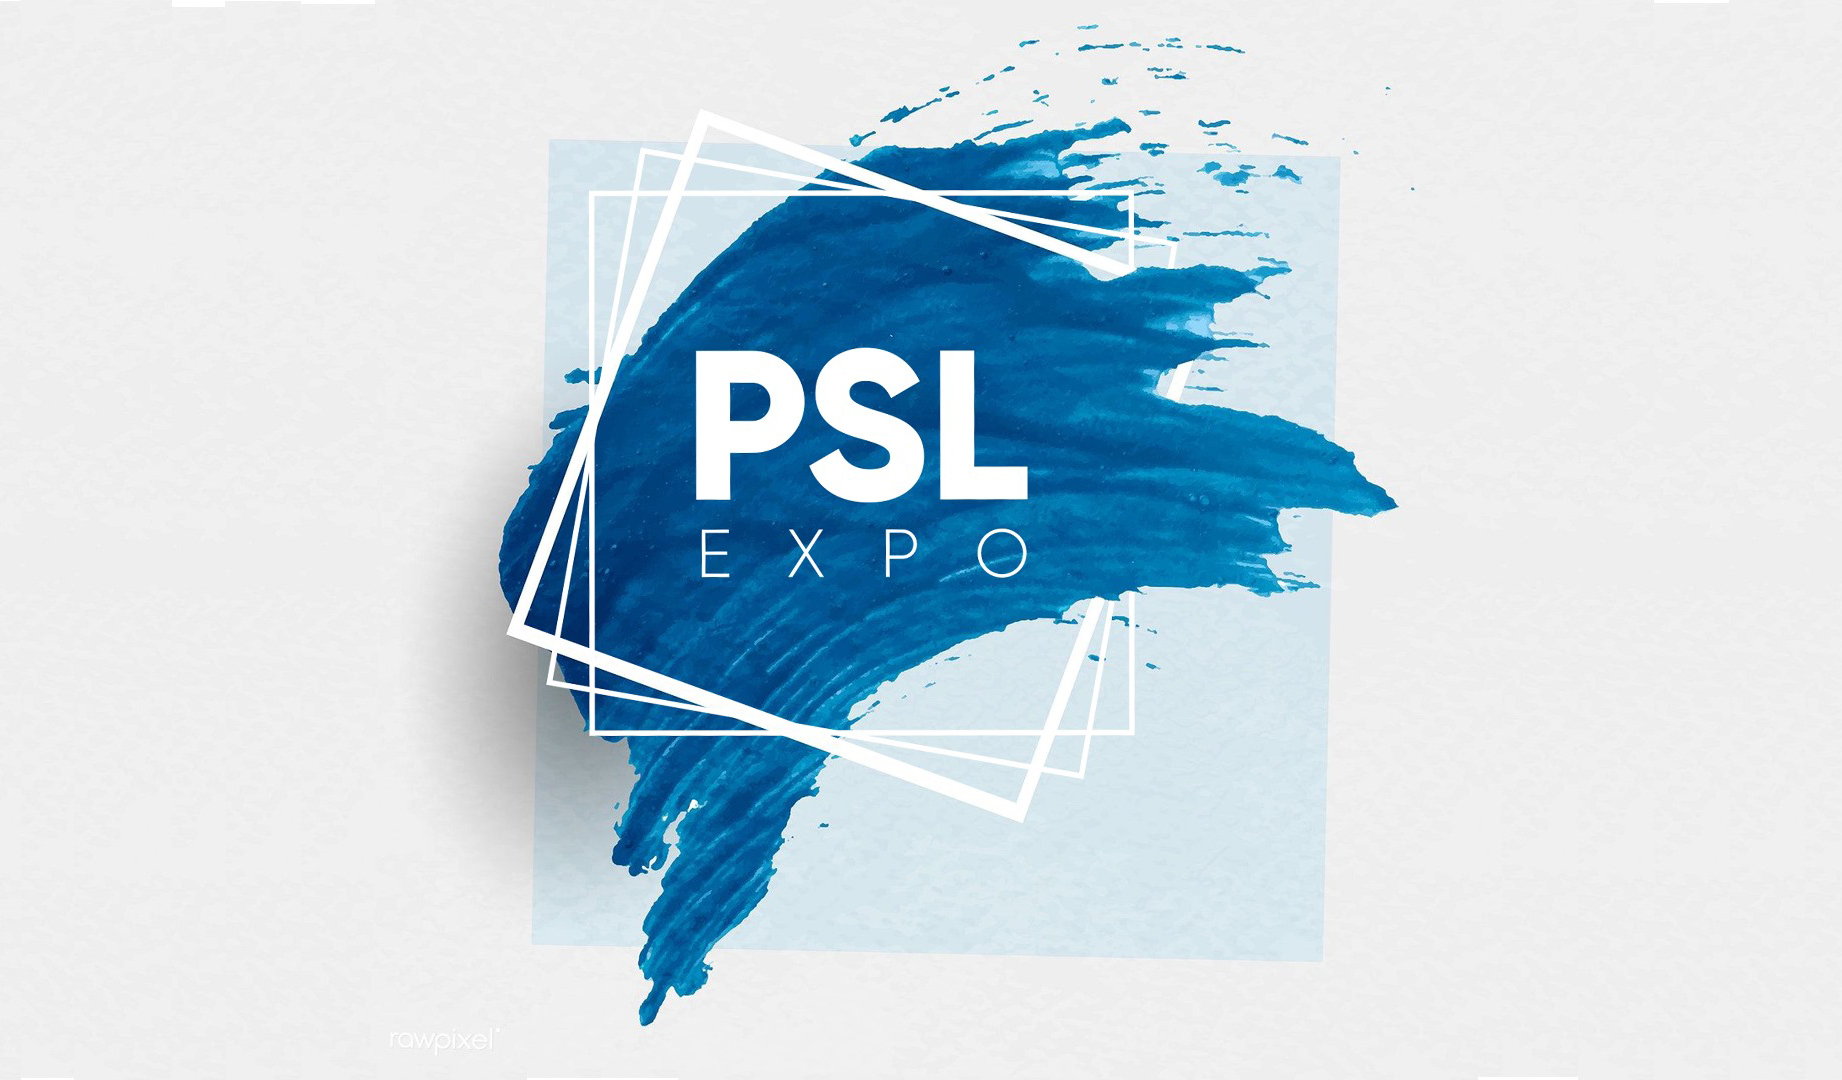 PSL expo